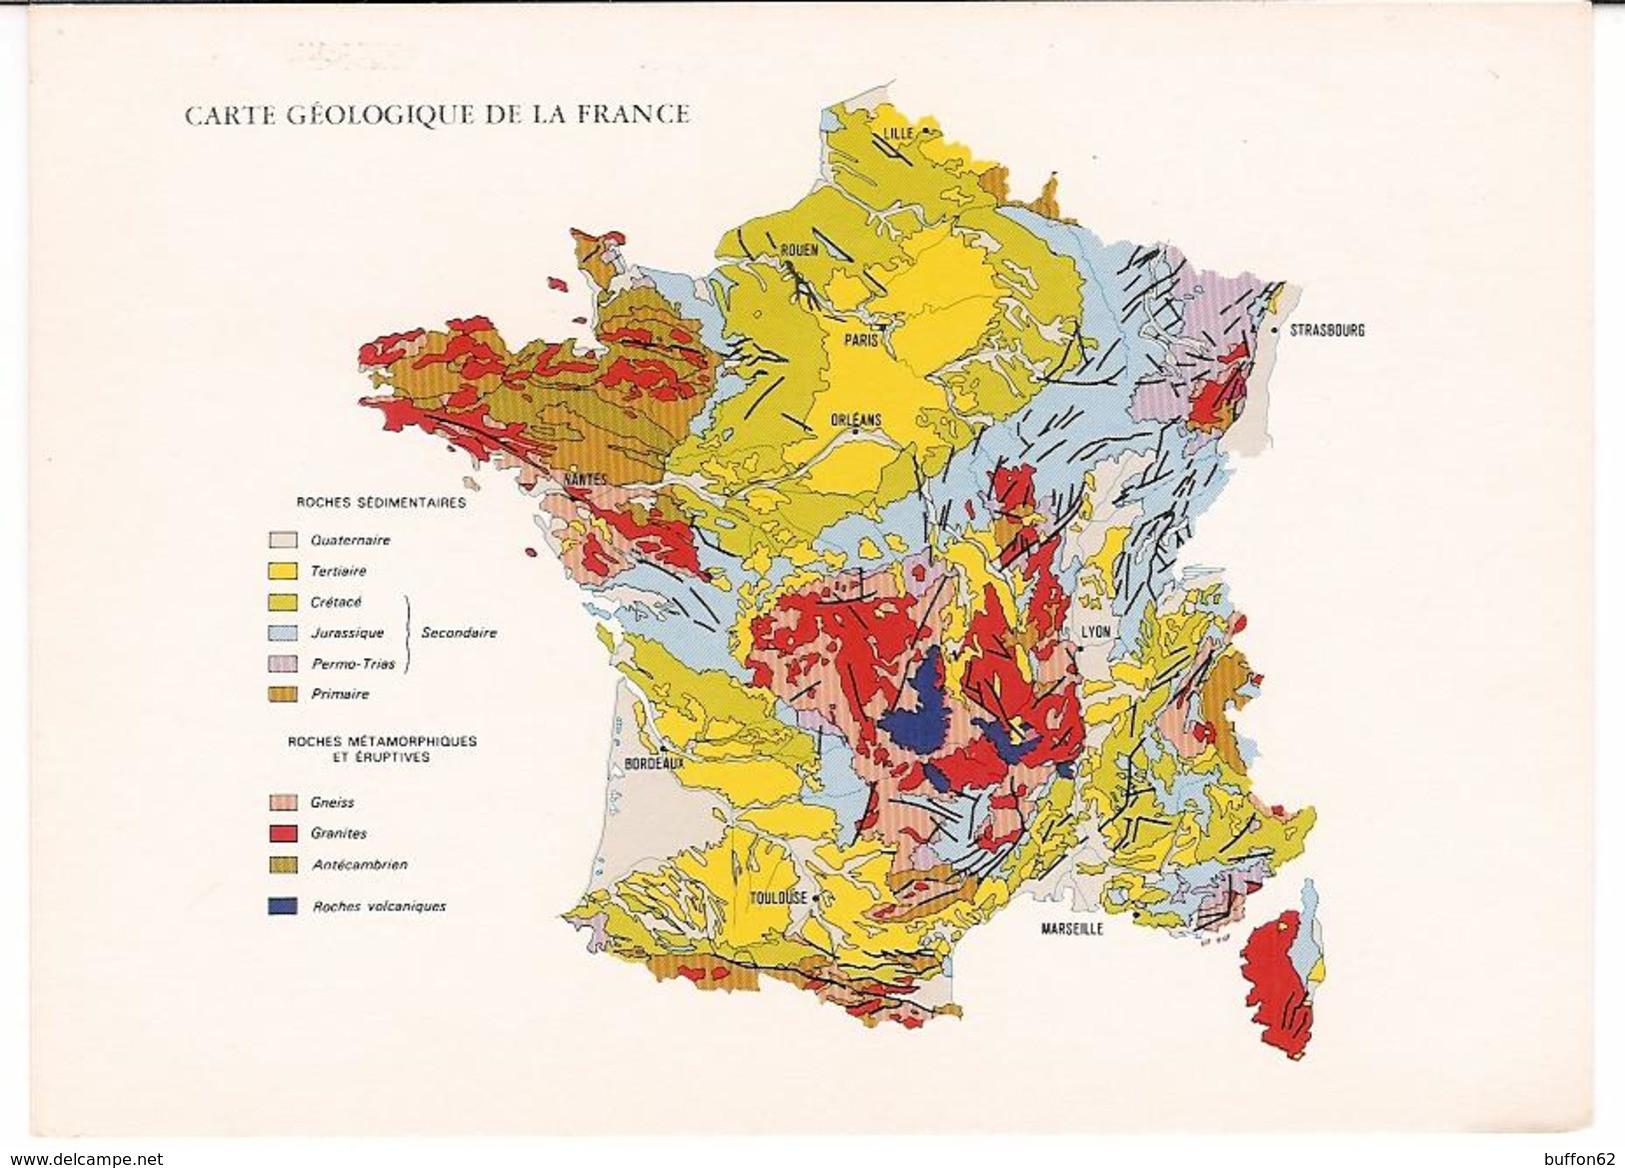 Carte Géologique De La France / Geological Map Of France. BRGM / Geological Survey. Scale 1/1,000,000. - Maps